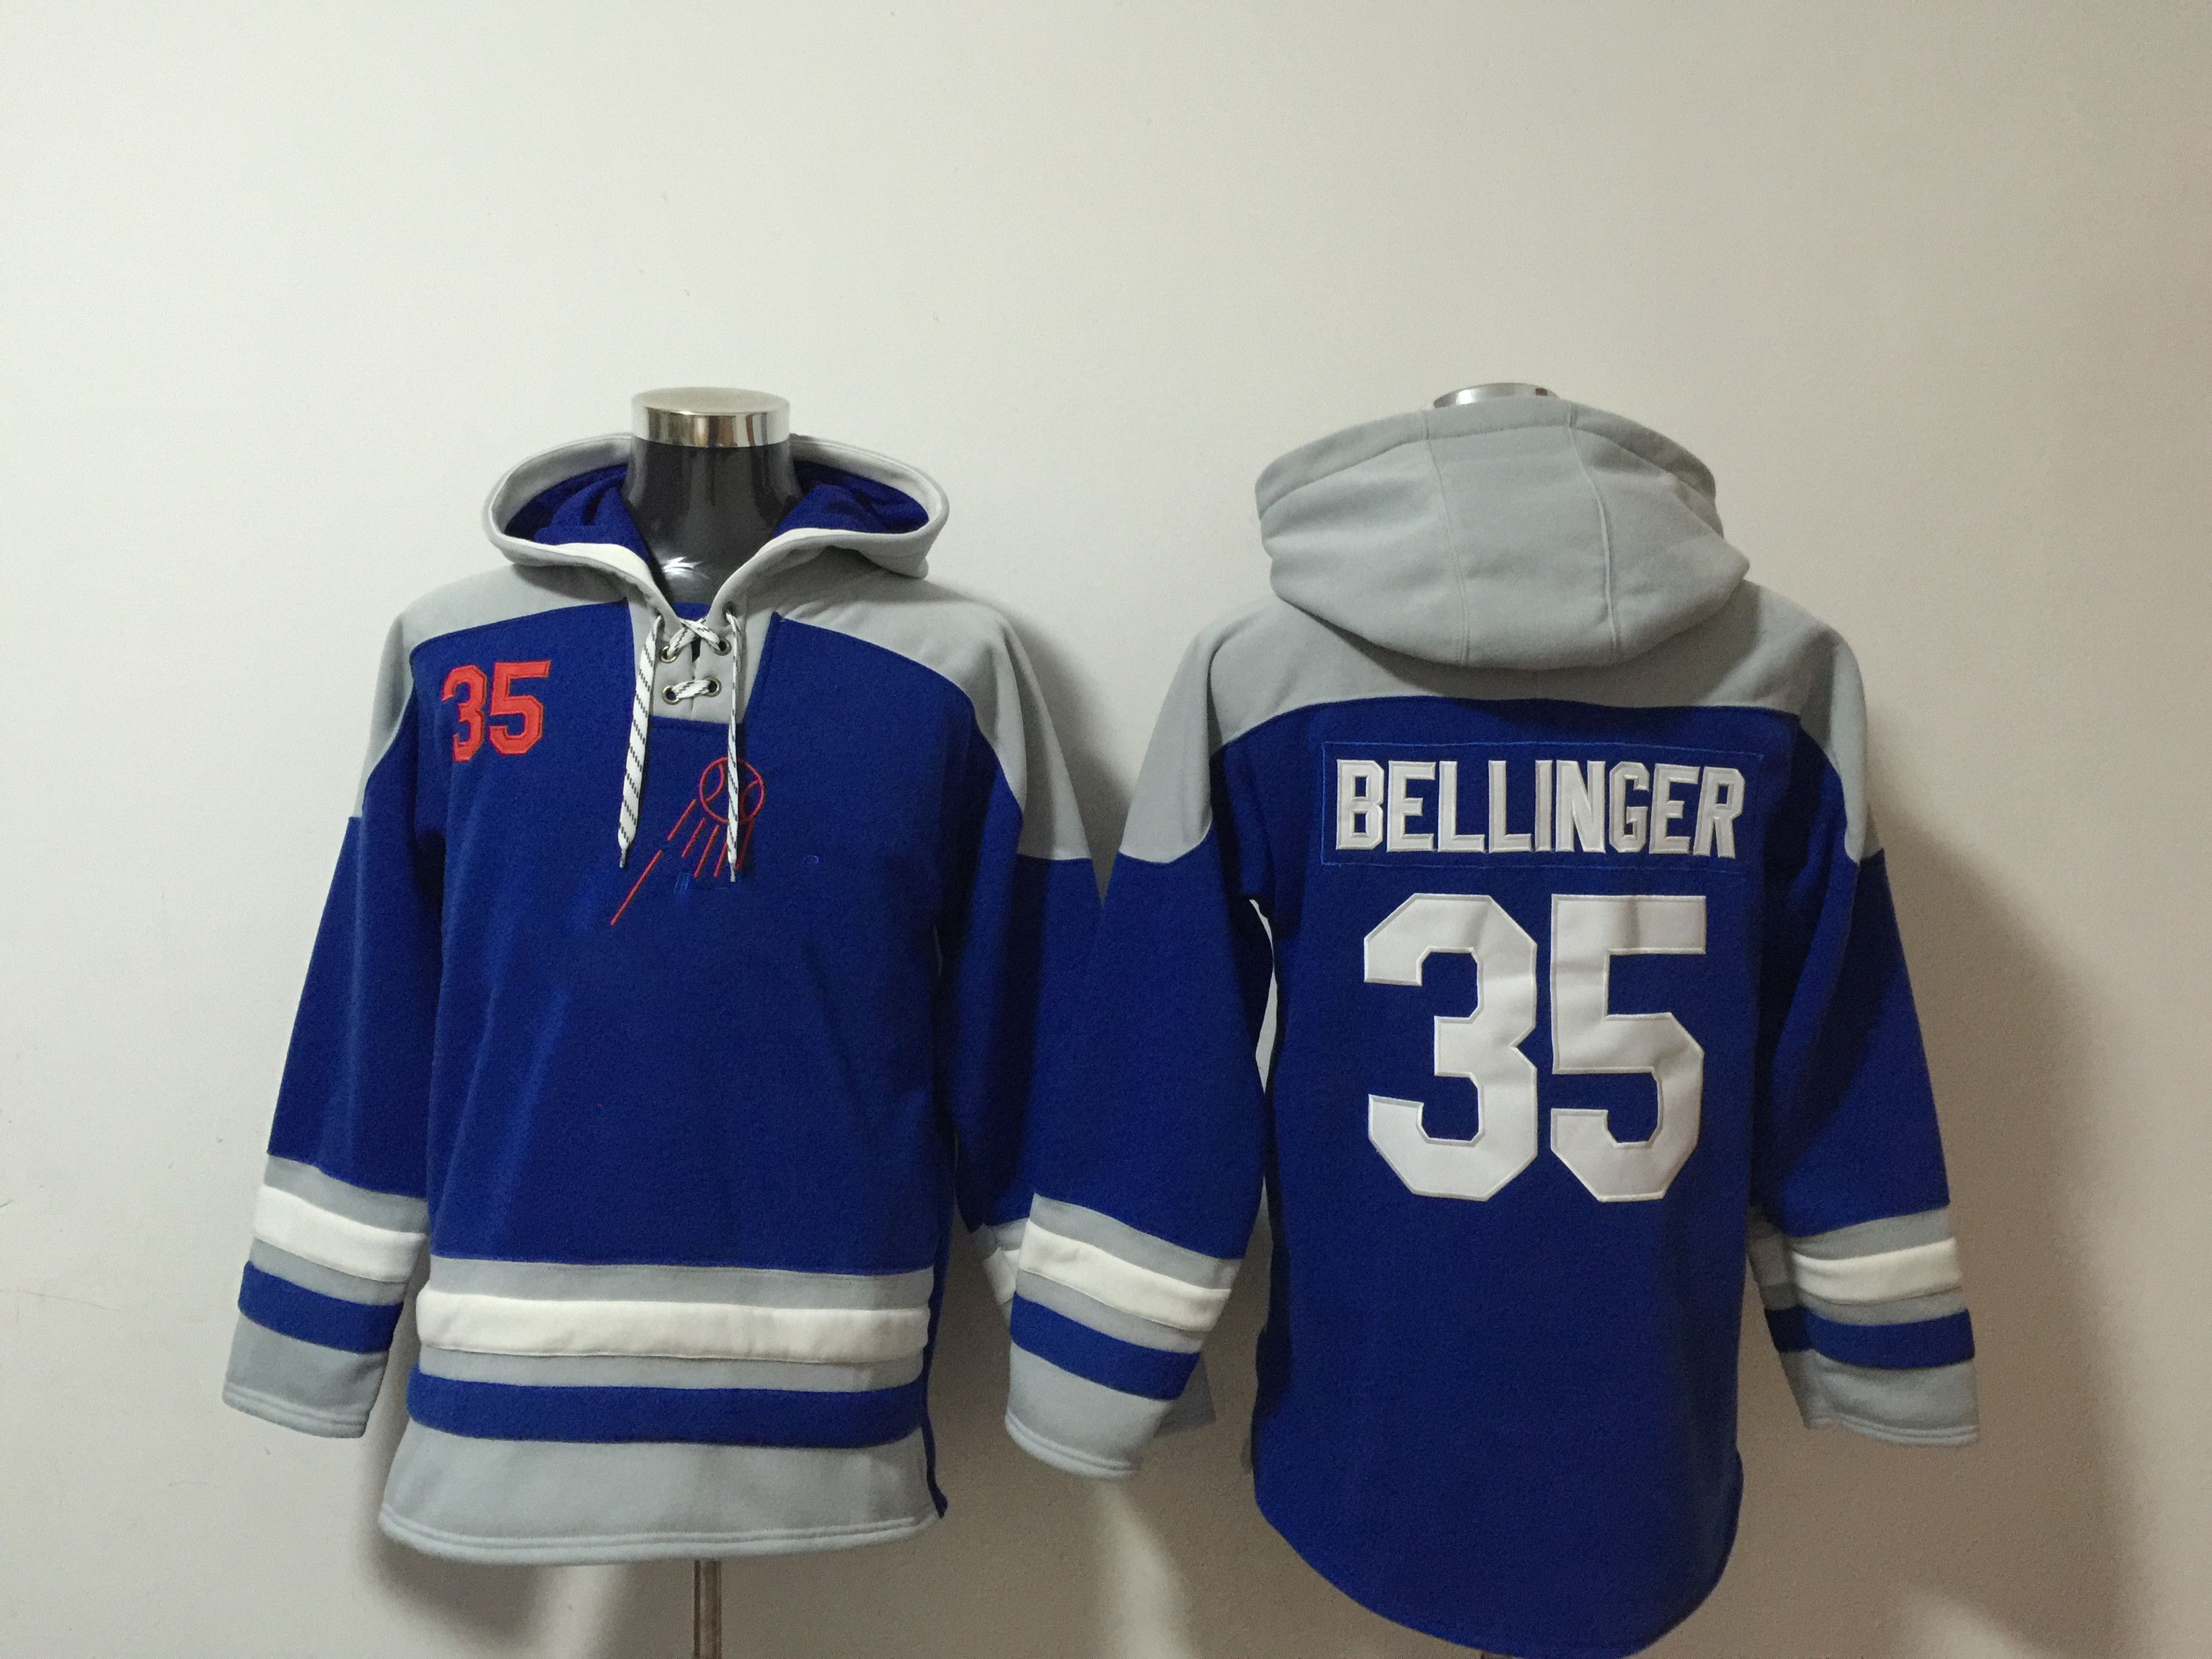 #35 Bellinger